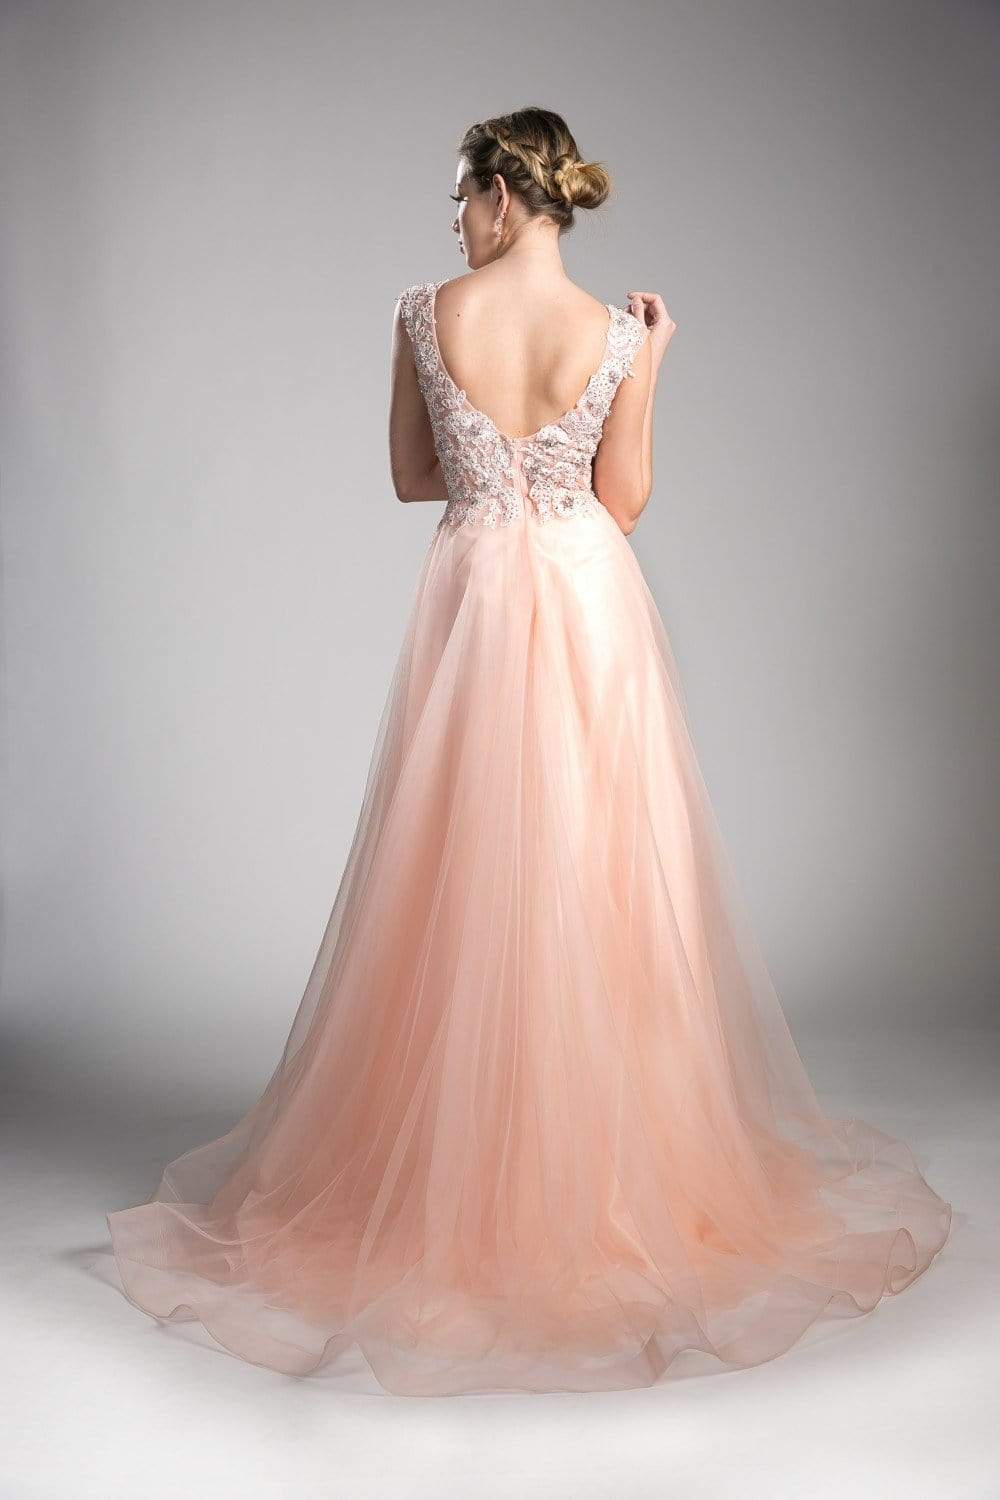 Cinderella Divine - KV1015 Embellished Scoop Neck A-line Dress Special Occasion Dress